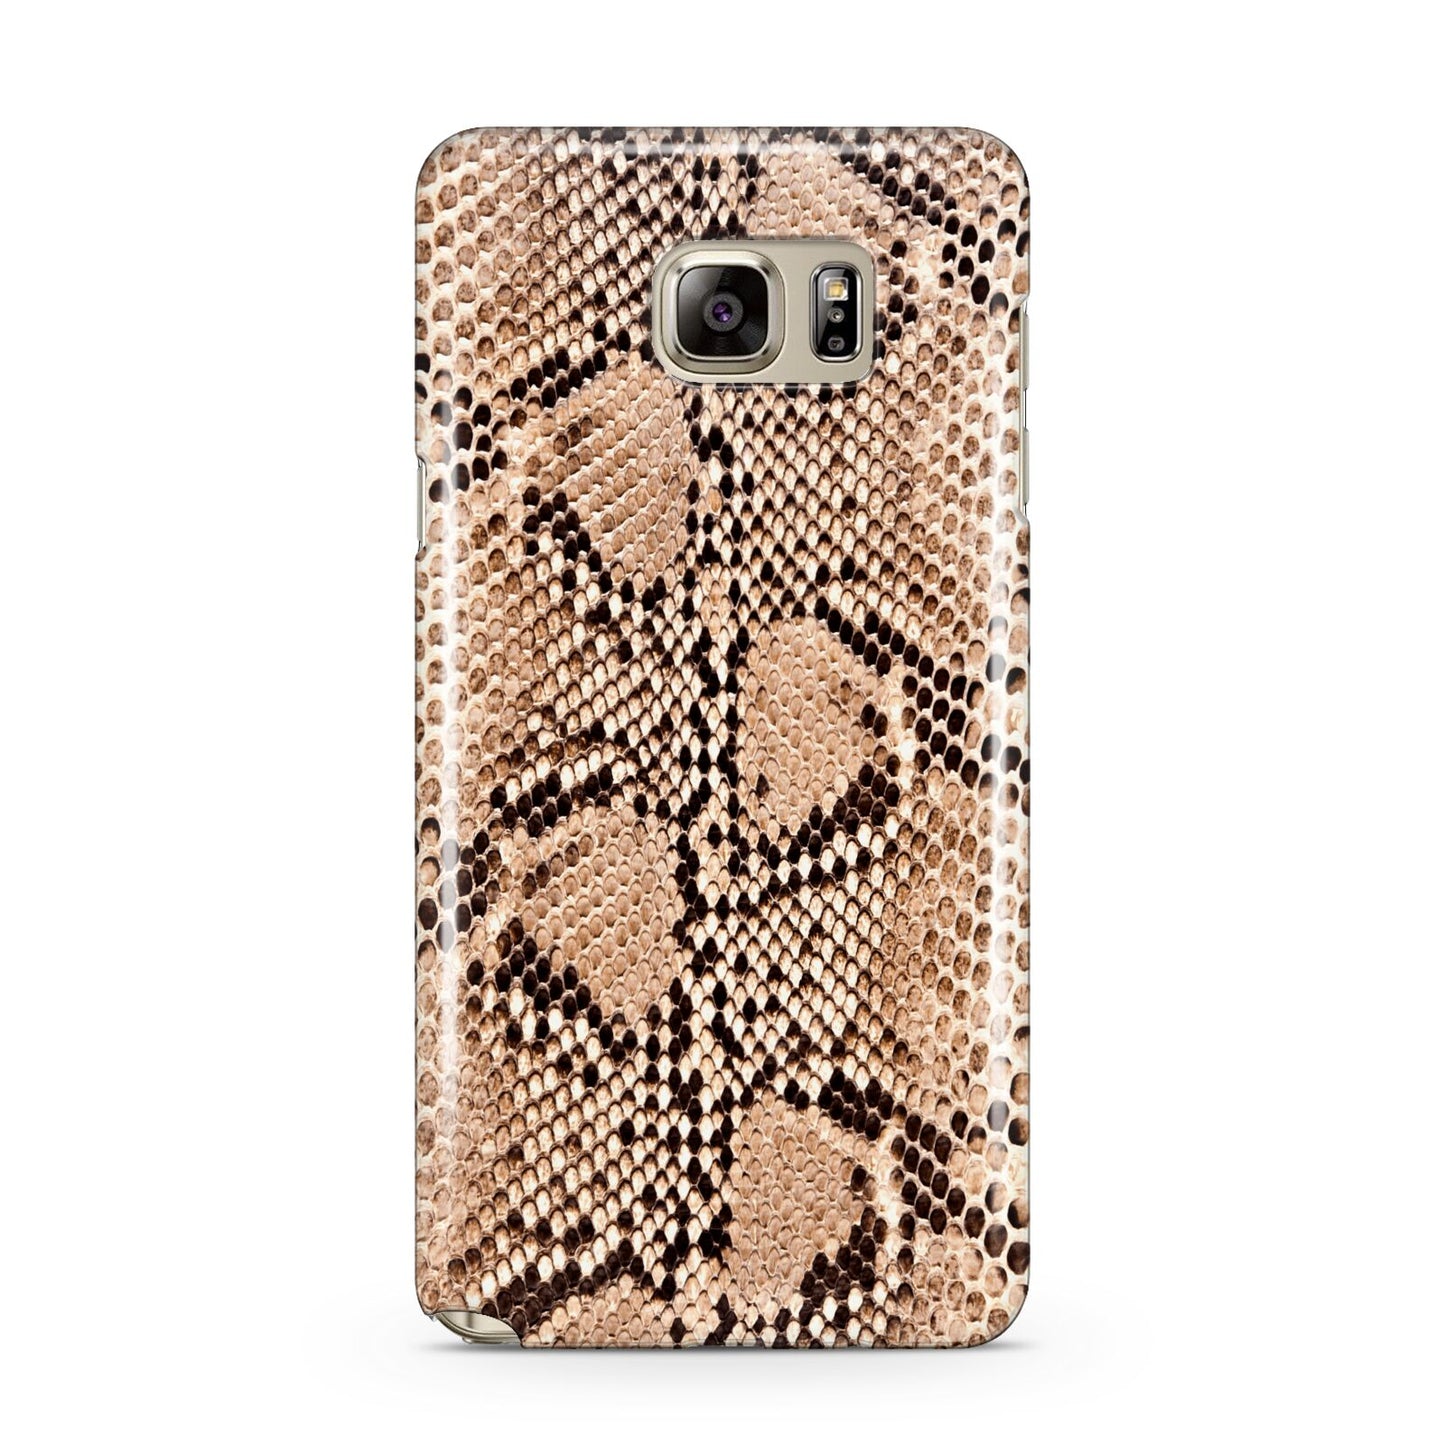 Snakeskin Samsung Galaxy Note 5 Case